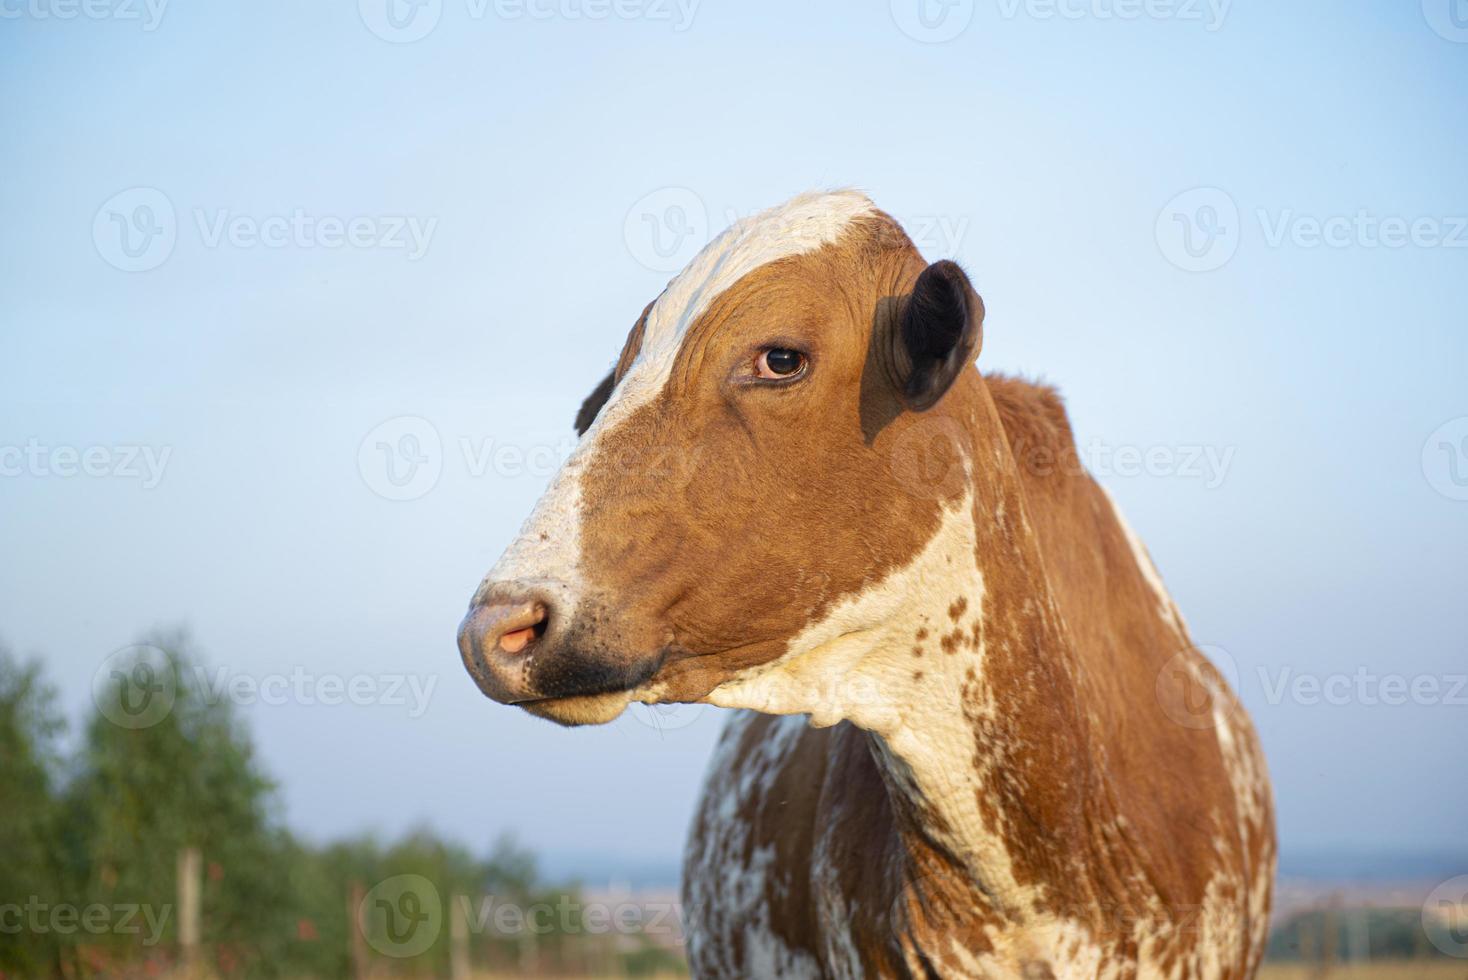 belle vache hollandaise tachetée de brun et de blanc photo